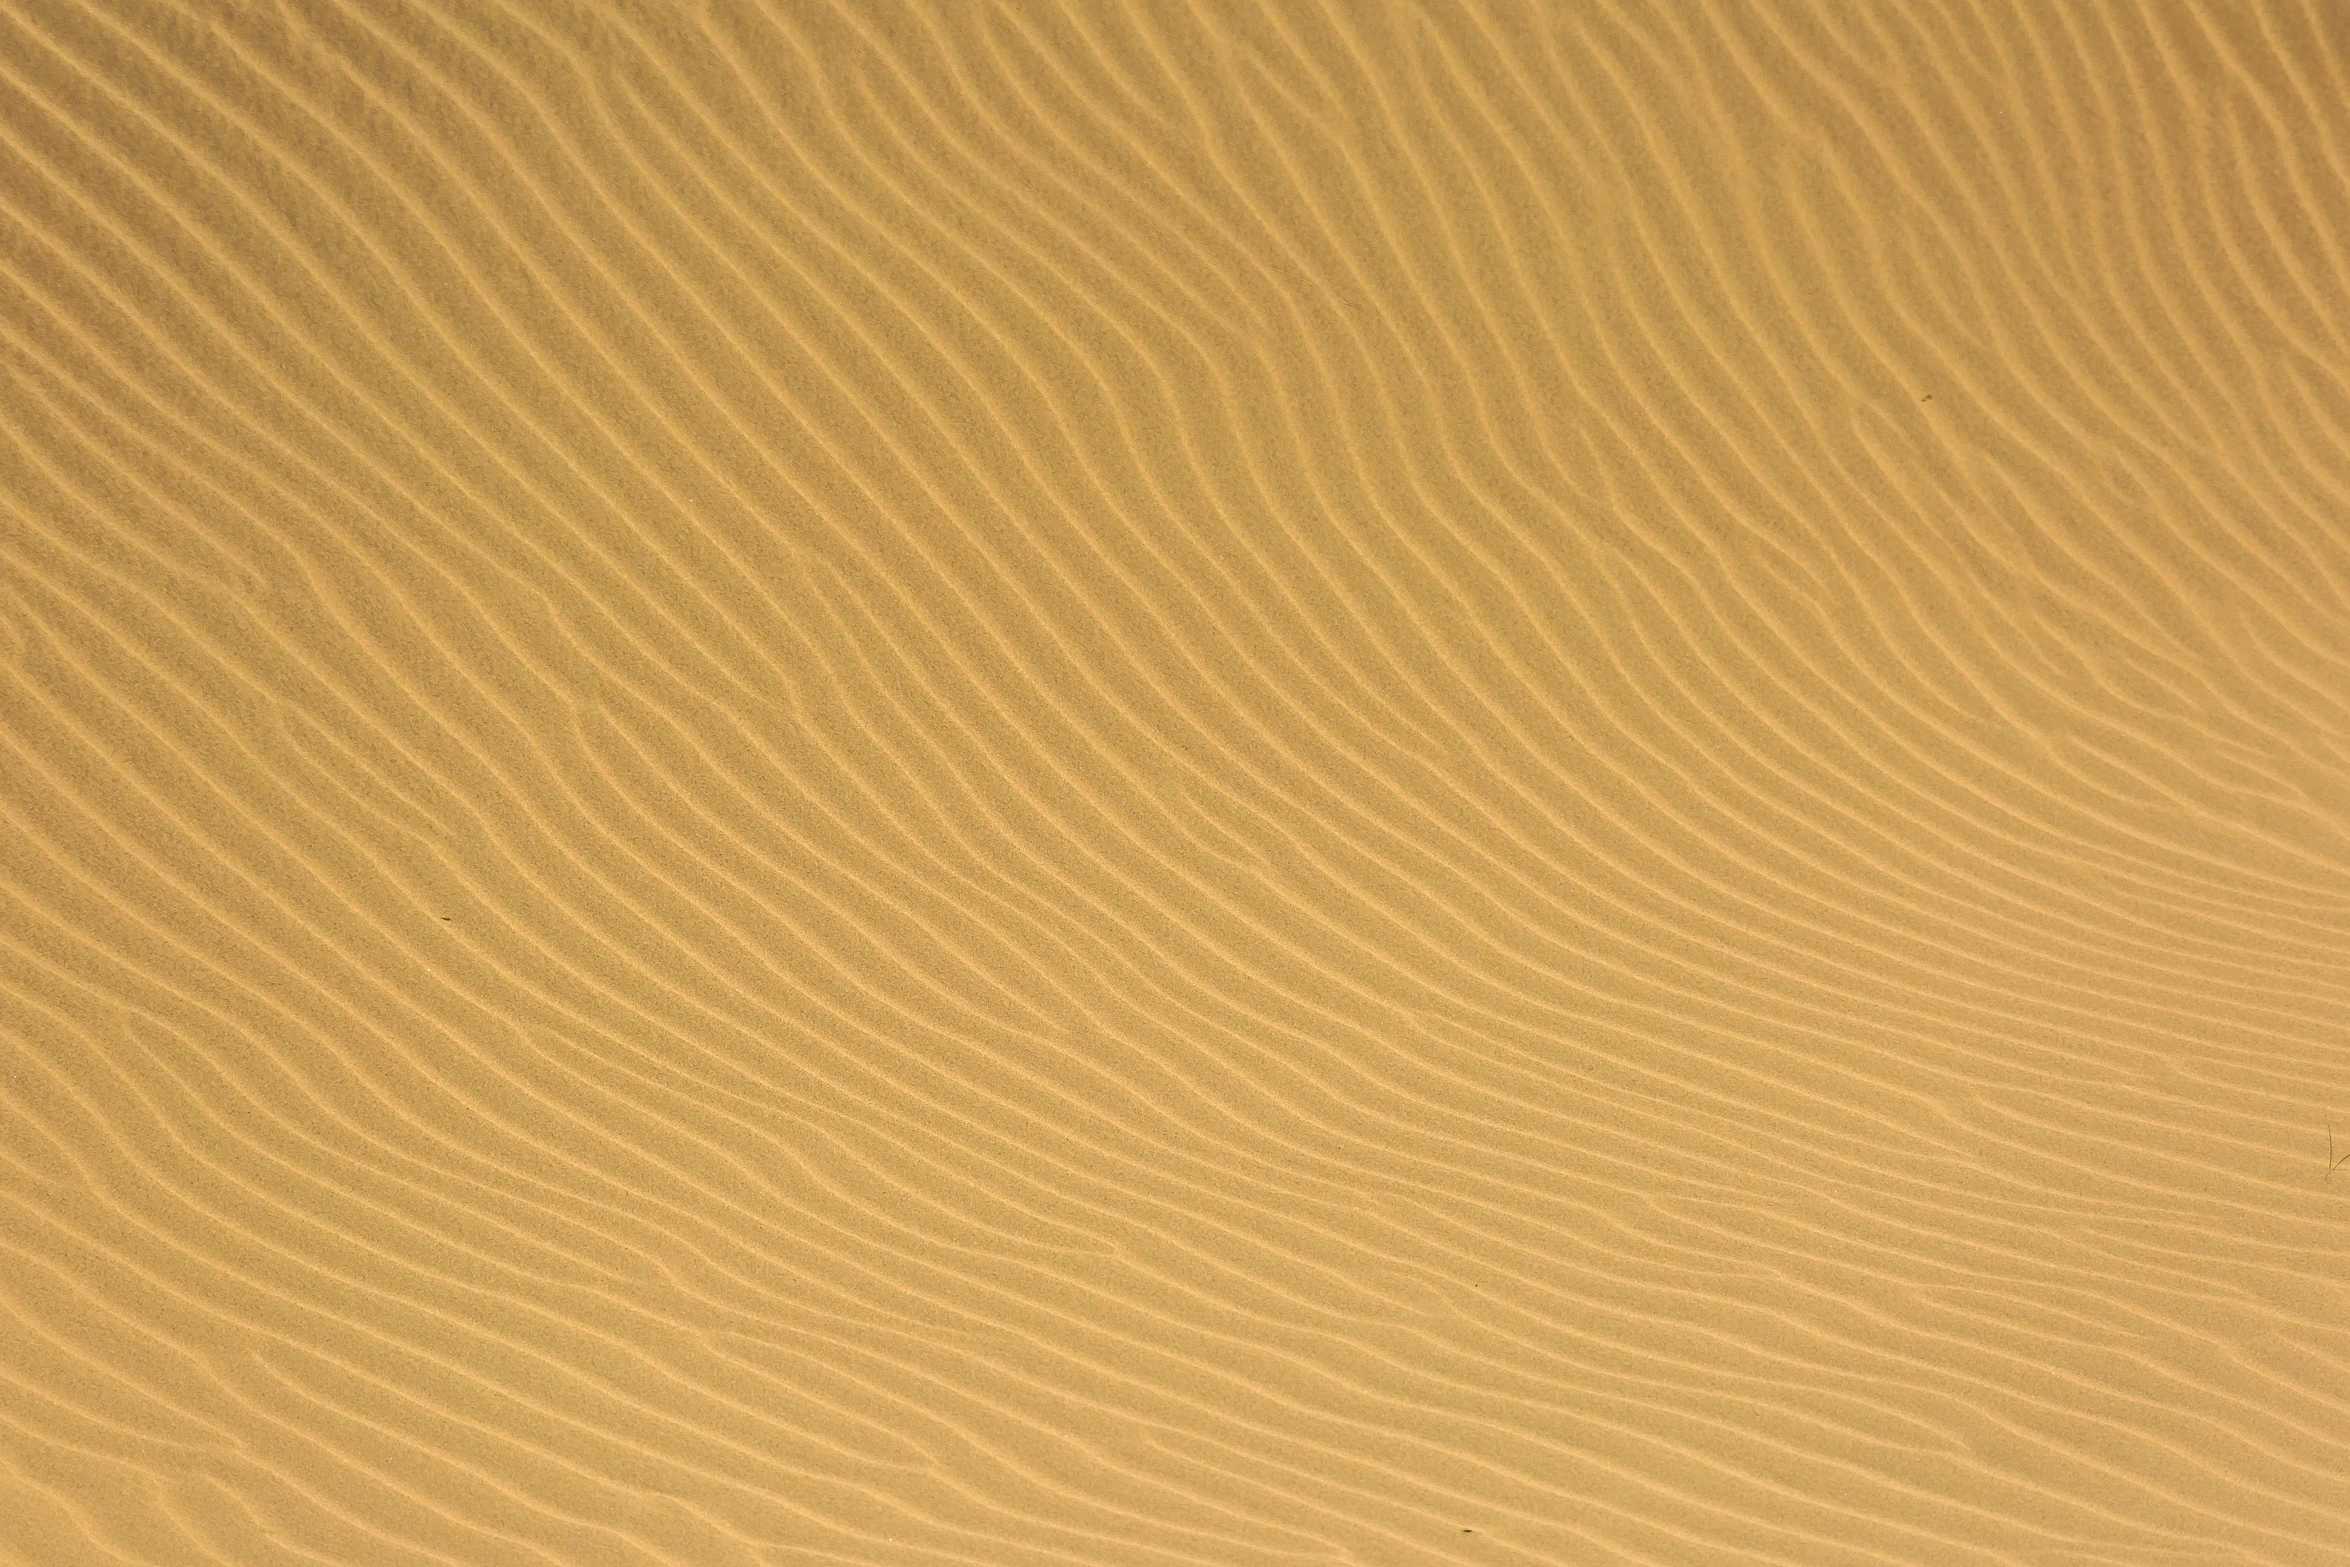 a man riding a surfboard on top of a sandy beach, flickr, op art, deep golden sand desert, subtle pattern, megascans texture, yellow hue